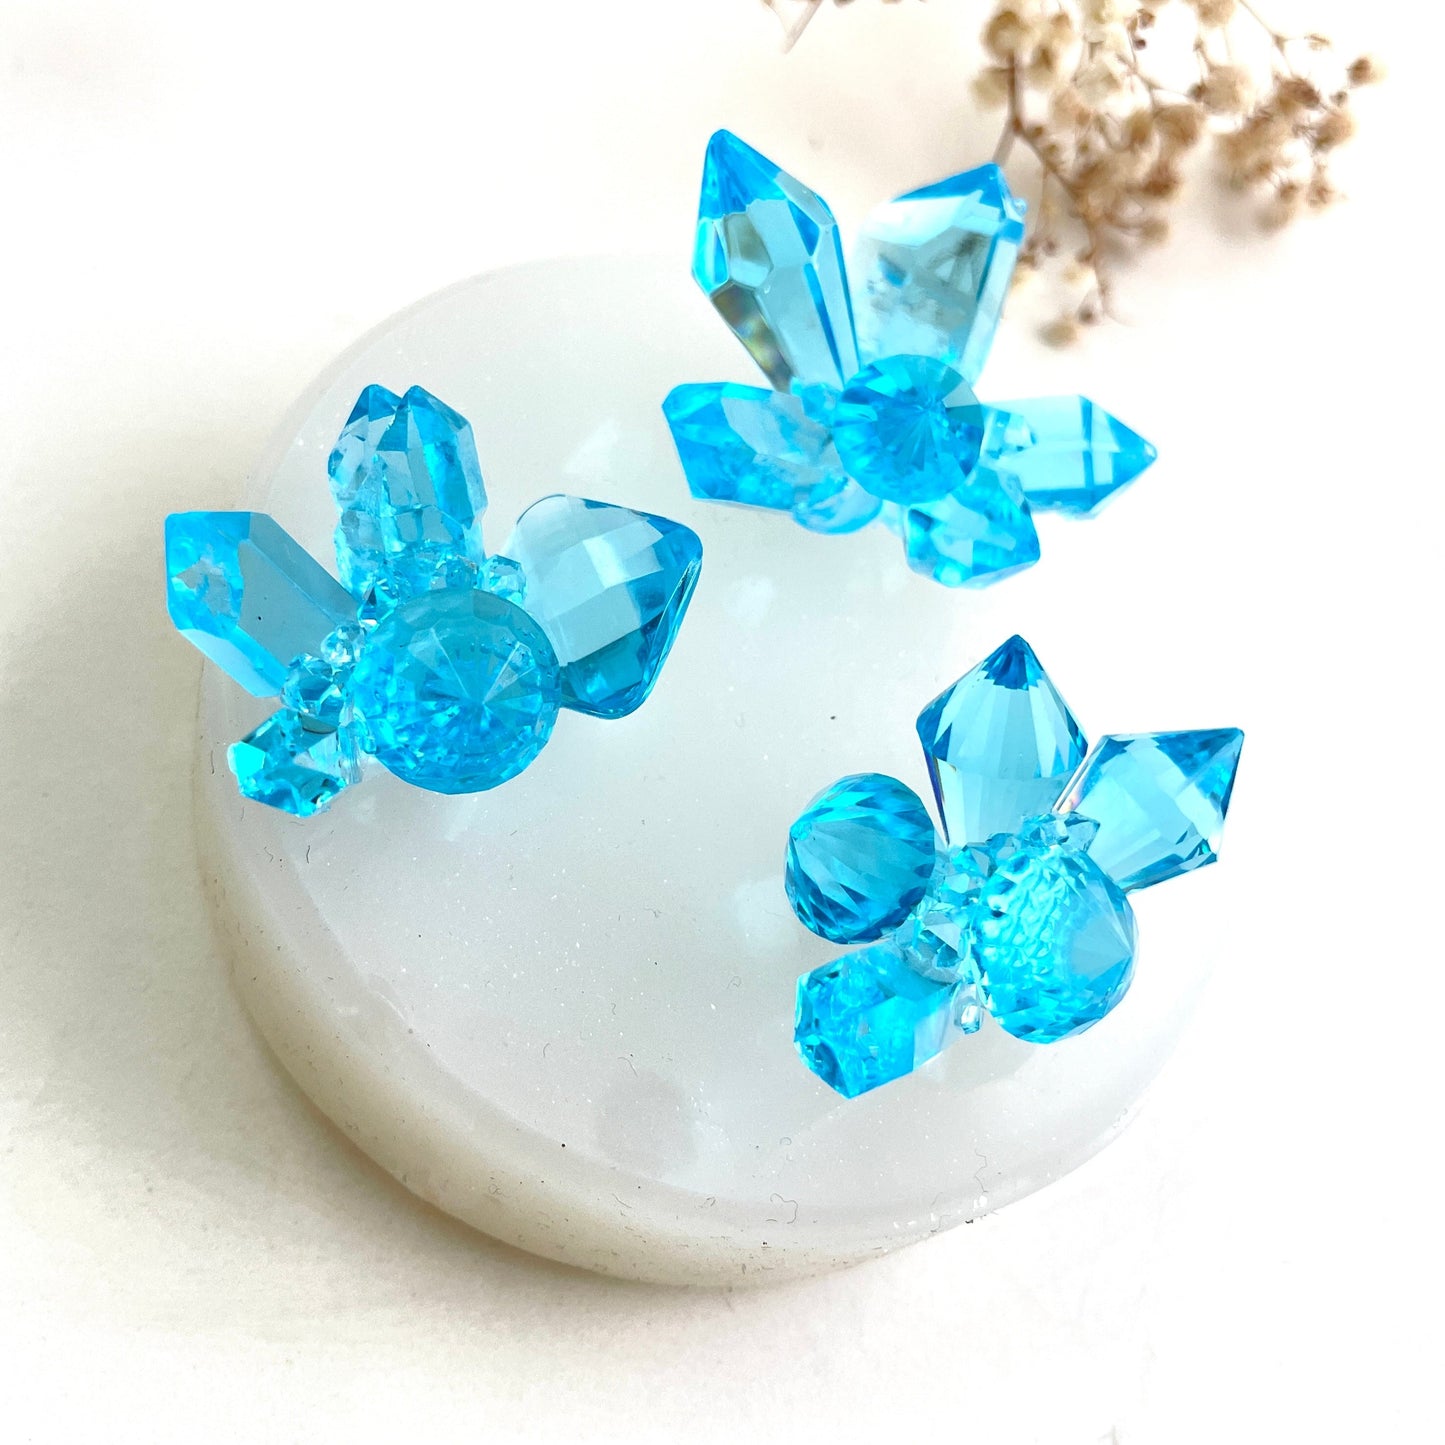 Kreieren Sie atemberaubende Kunstharzkunst mit der Silikonform „3 kleine Kristalle“.